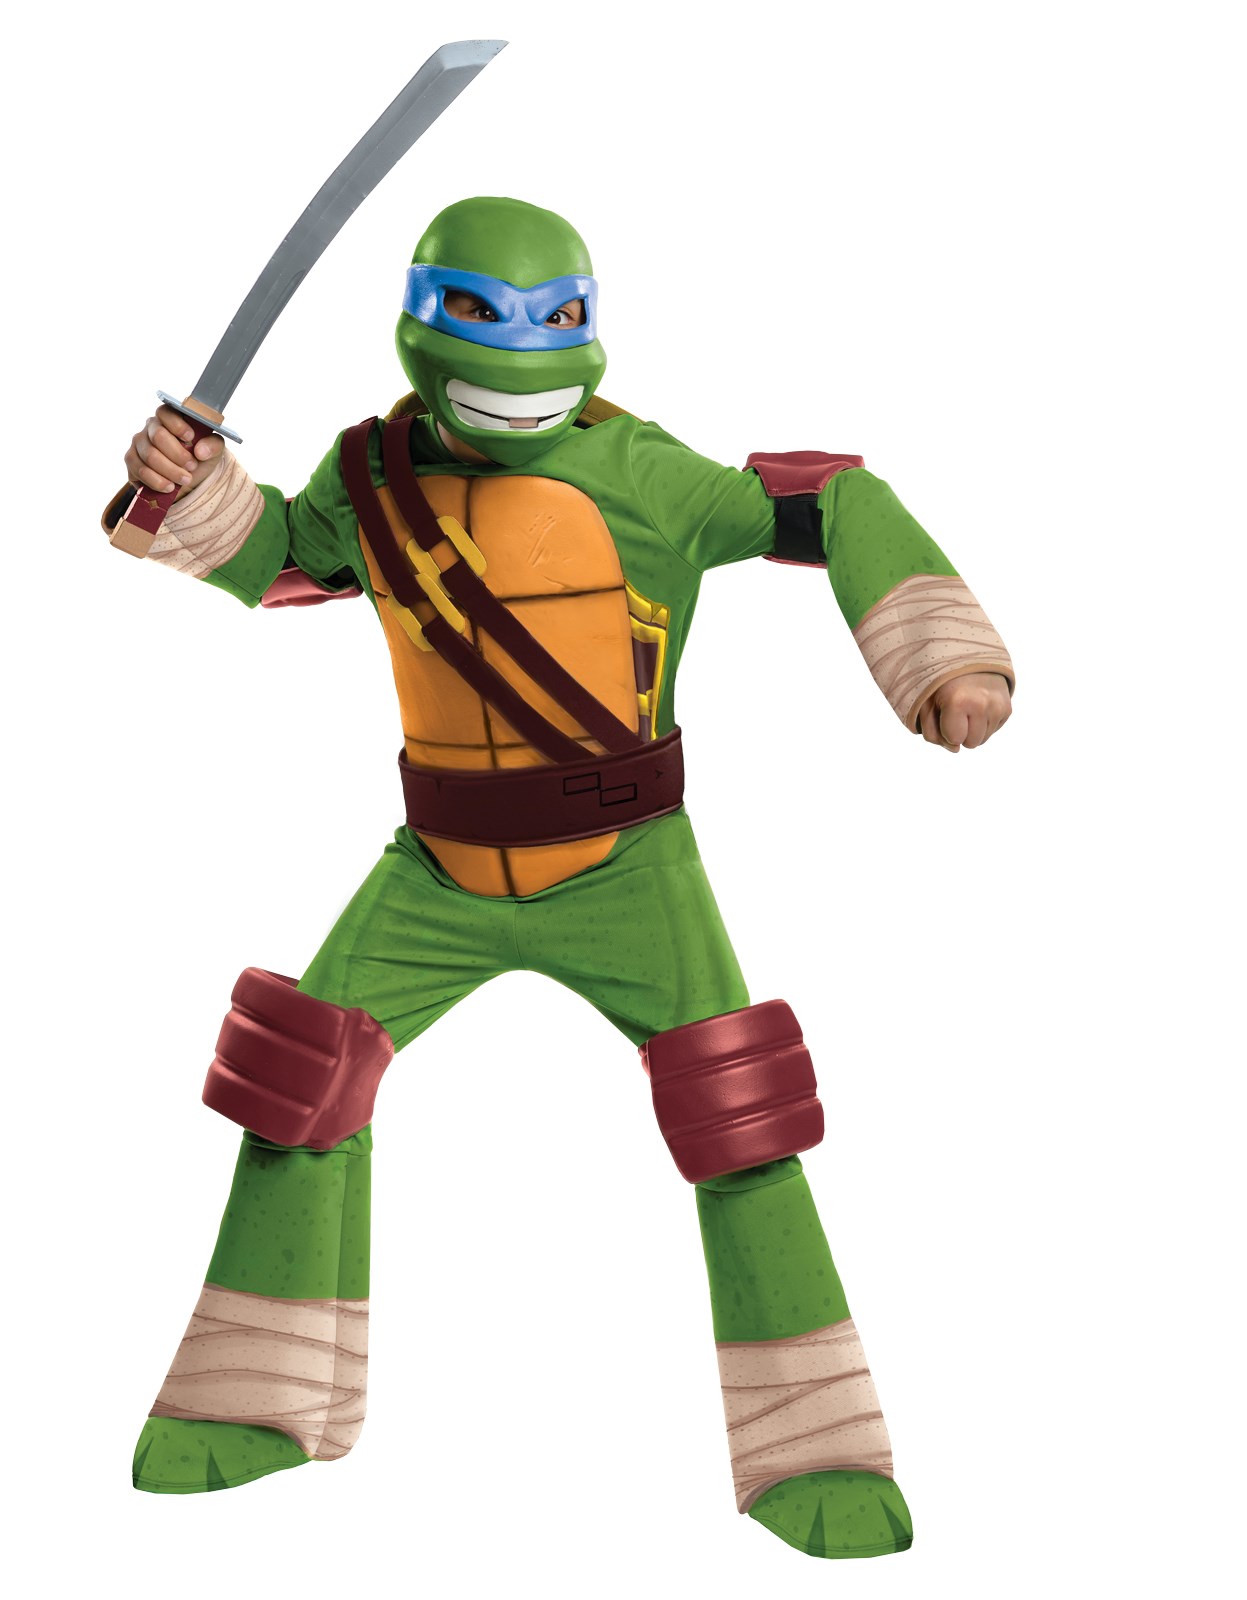 Teenage Mutant Ninja Turtle - Leonardo Kids Costume